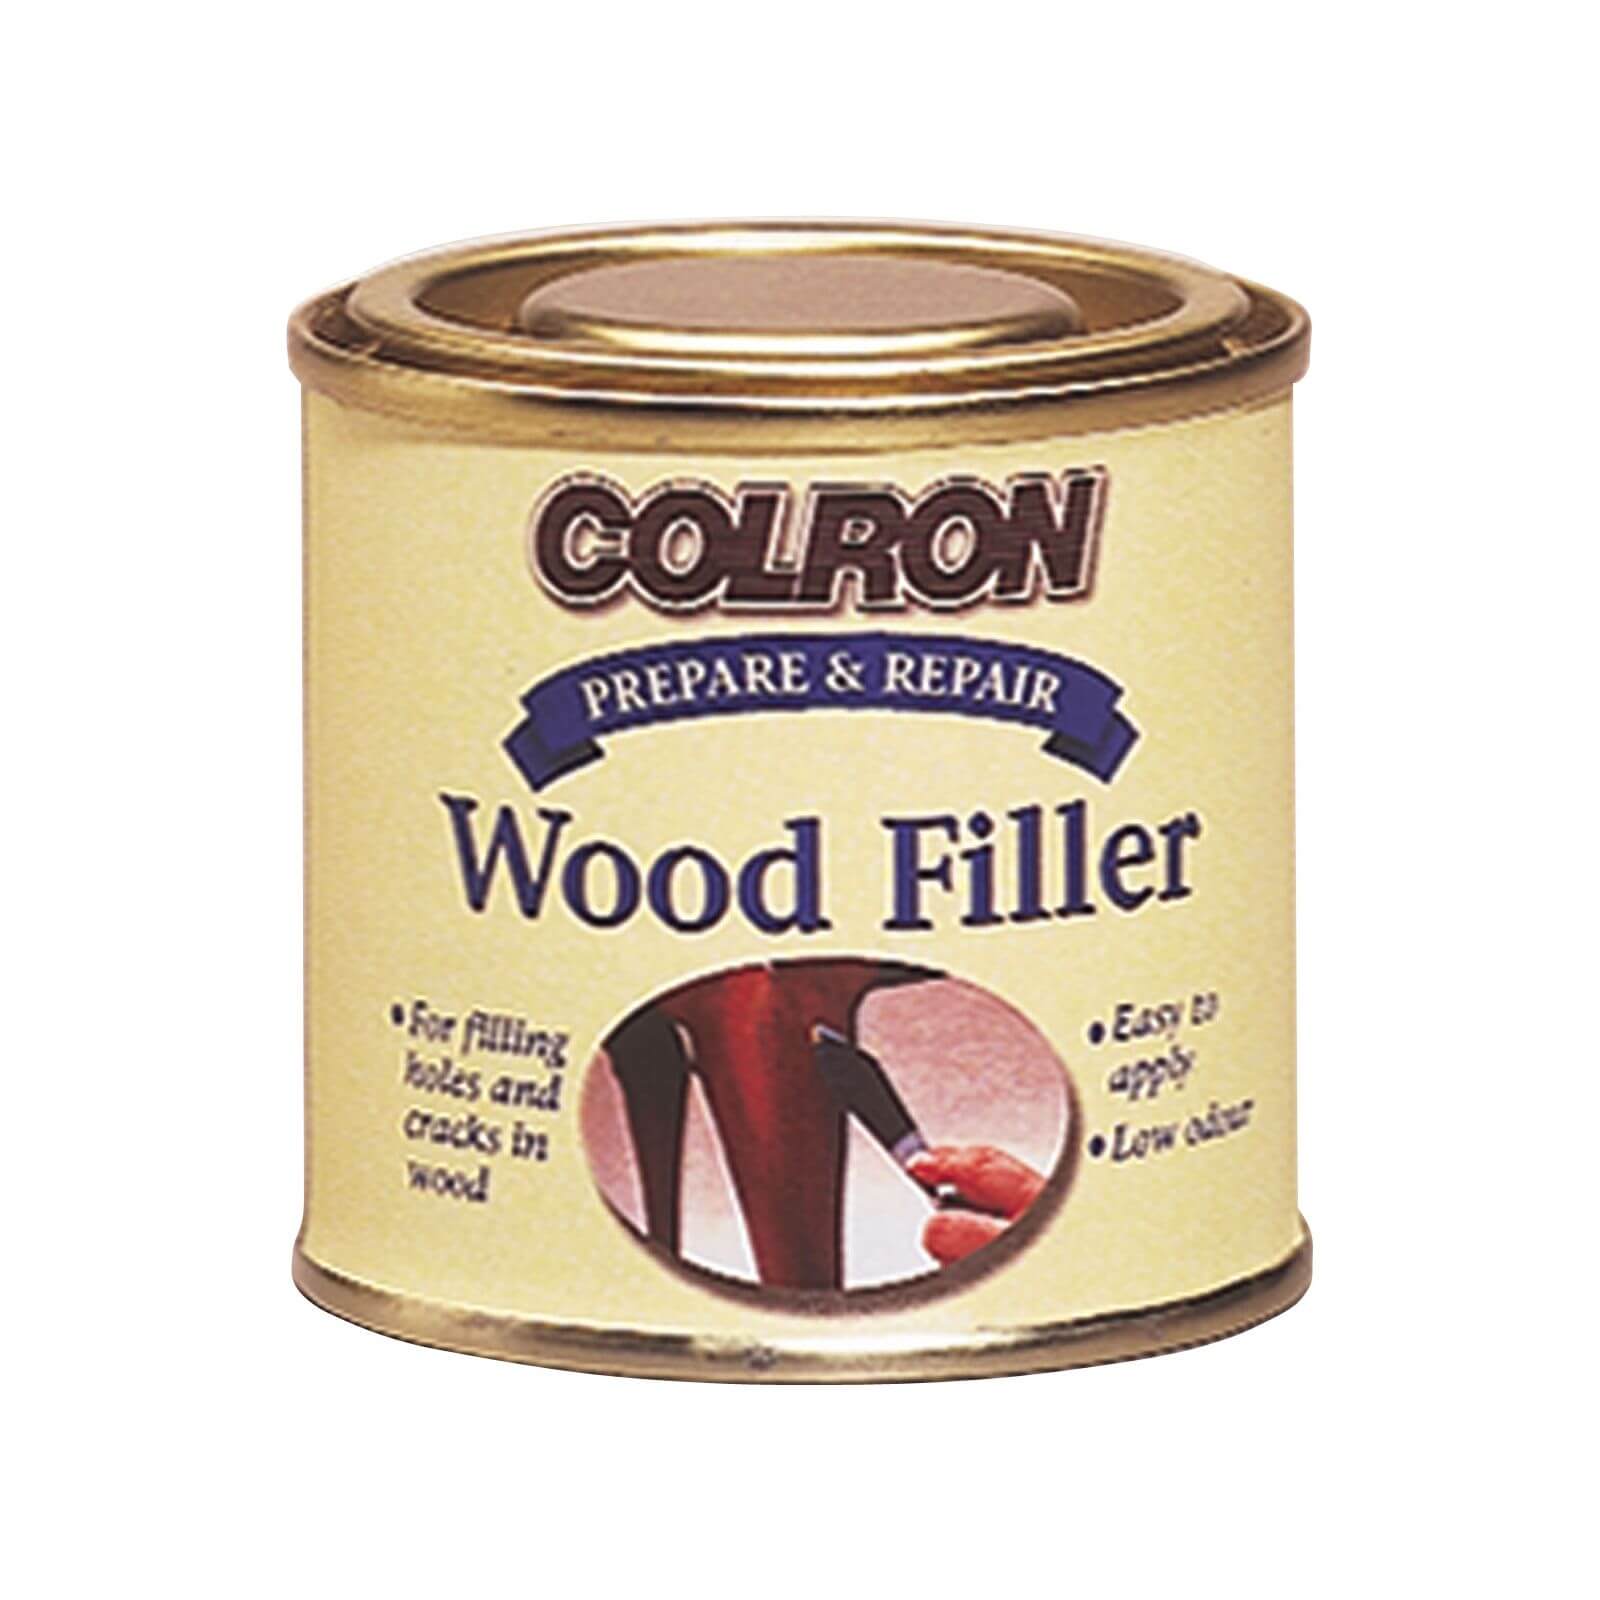 Colron Wood Filler